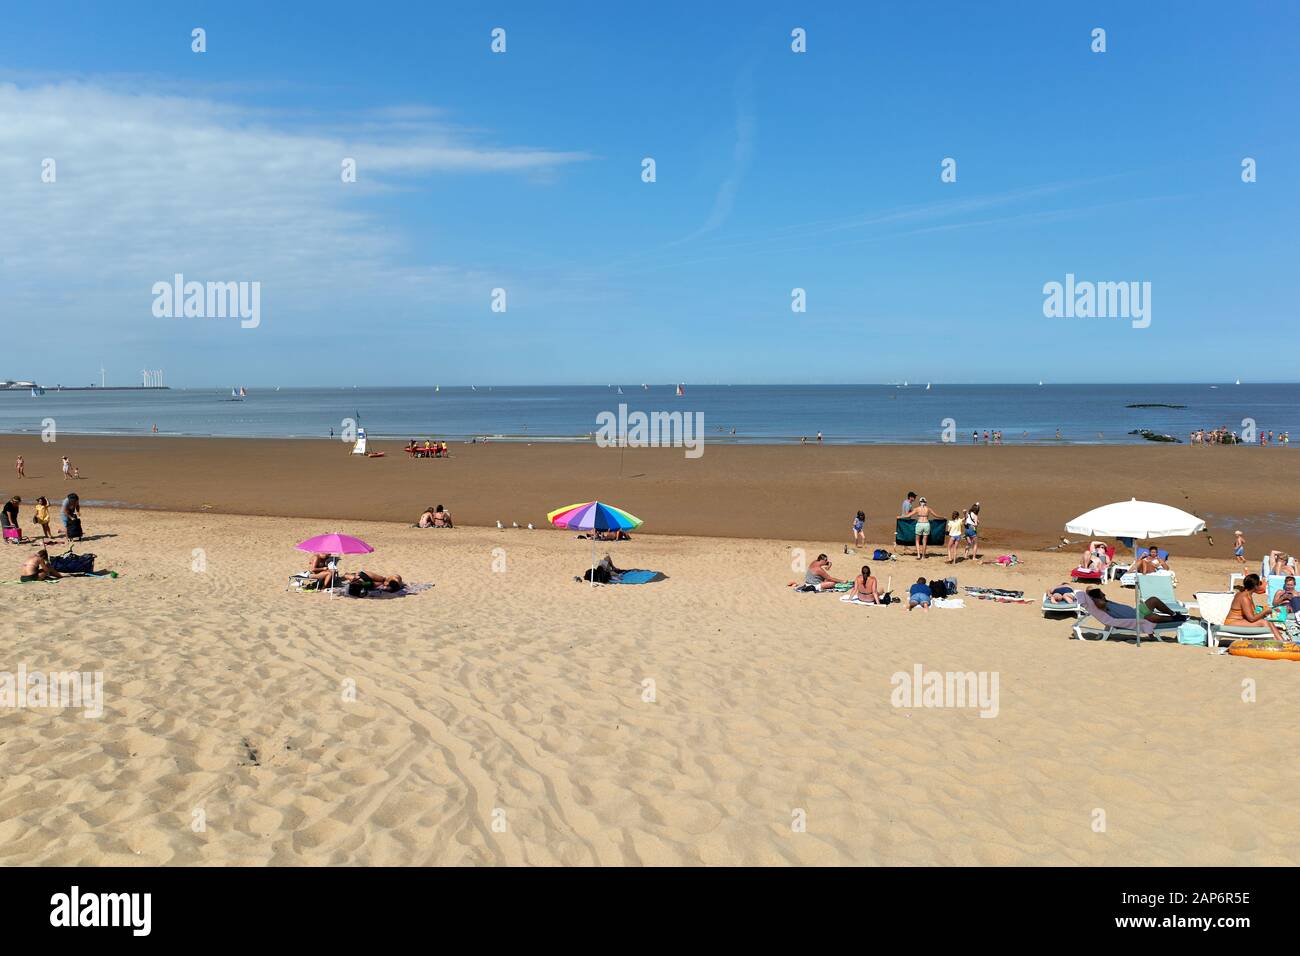 Knokke, Belgique - 31 août 2019: Les touristes sur la plage en été prennent le bain de soleil Banque D'Images